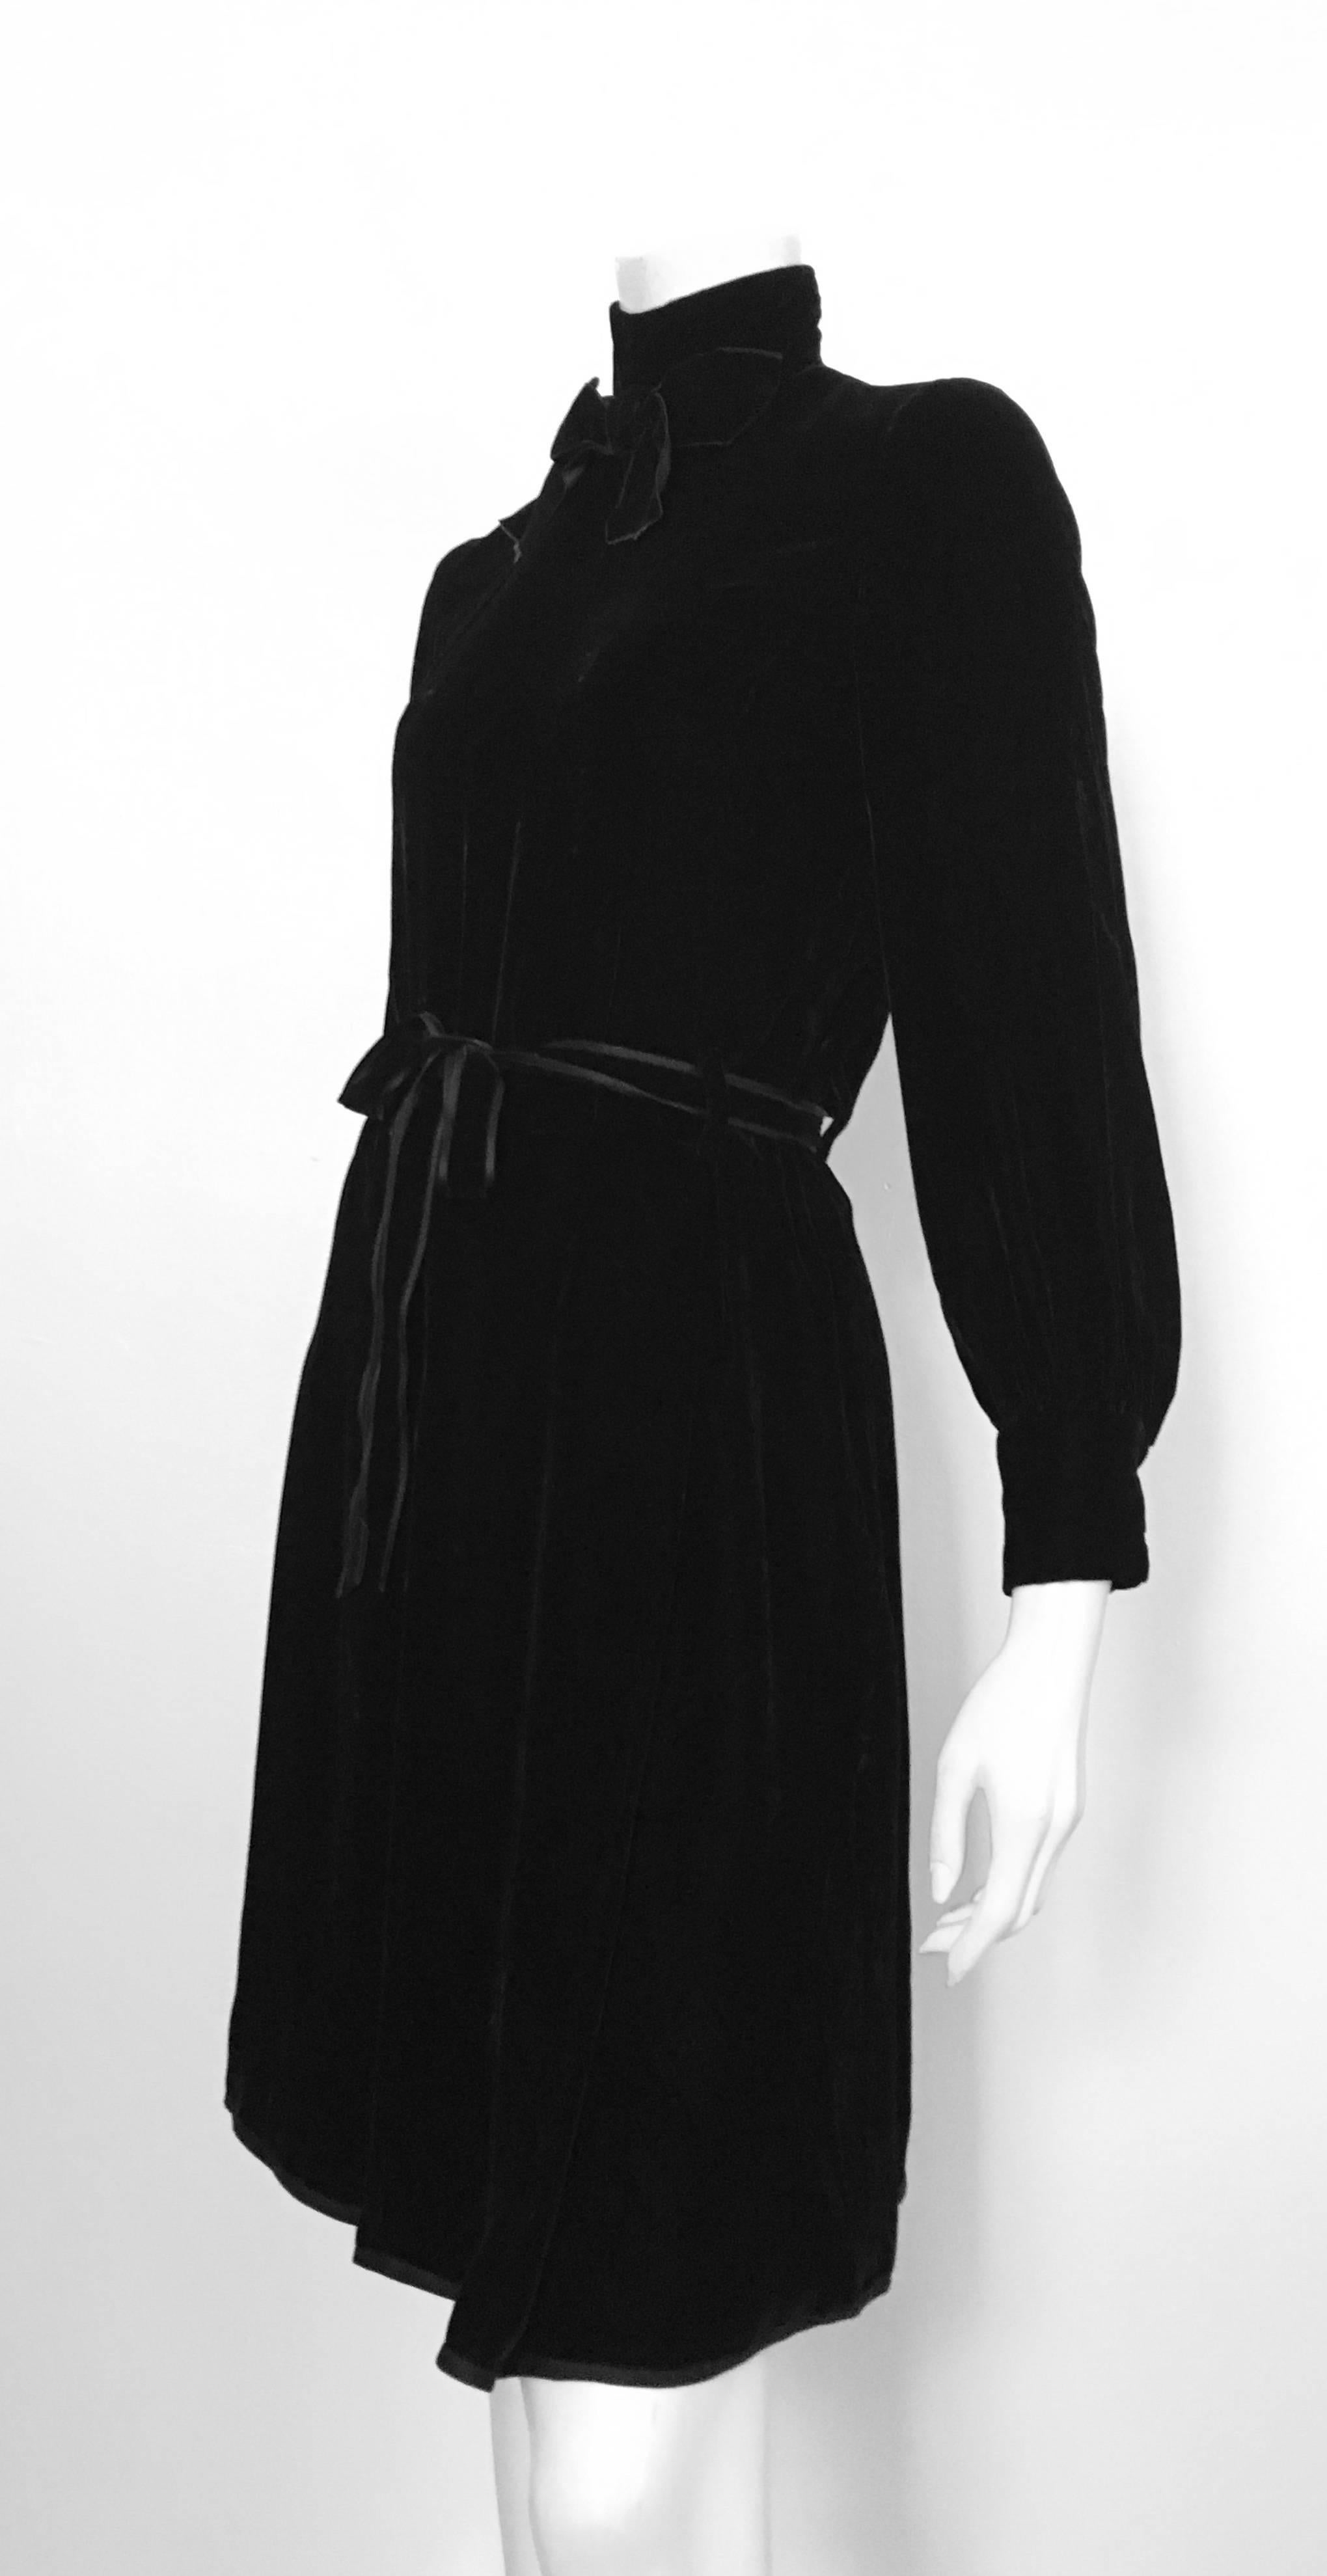 Dior for El Jay 1960s Black Velvet Evening Dress with Bow & Belt Size 6. 3